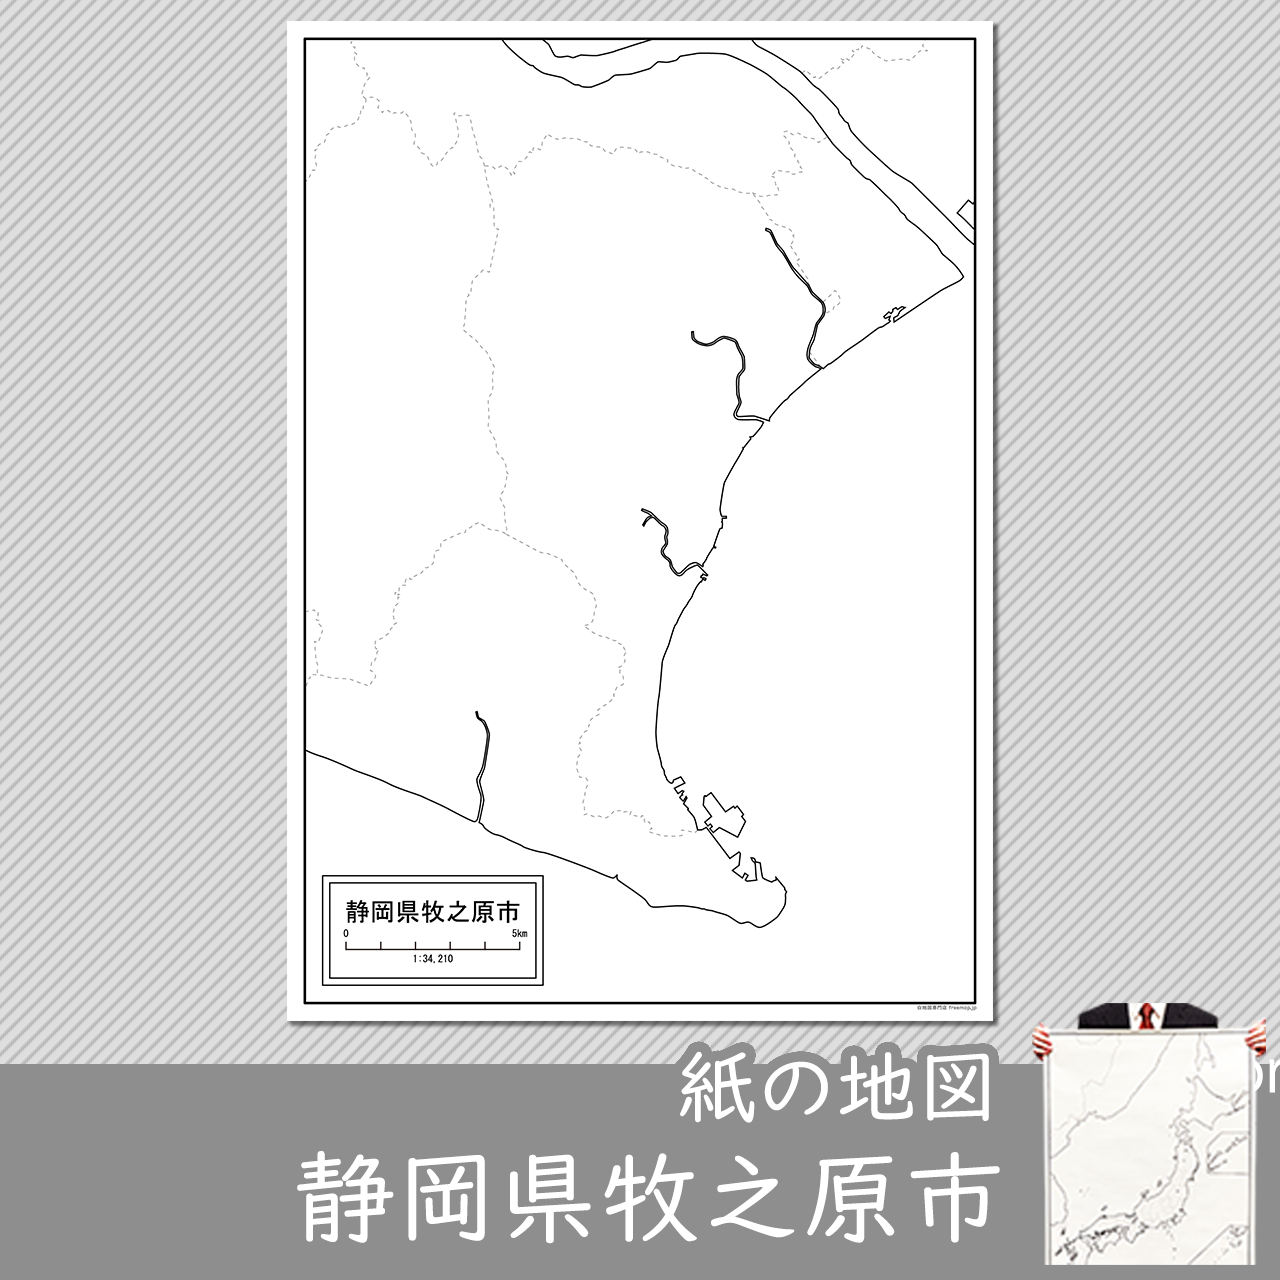 牧之原市の紙の白地図のサムネイル